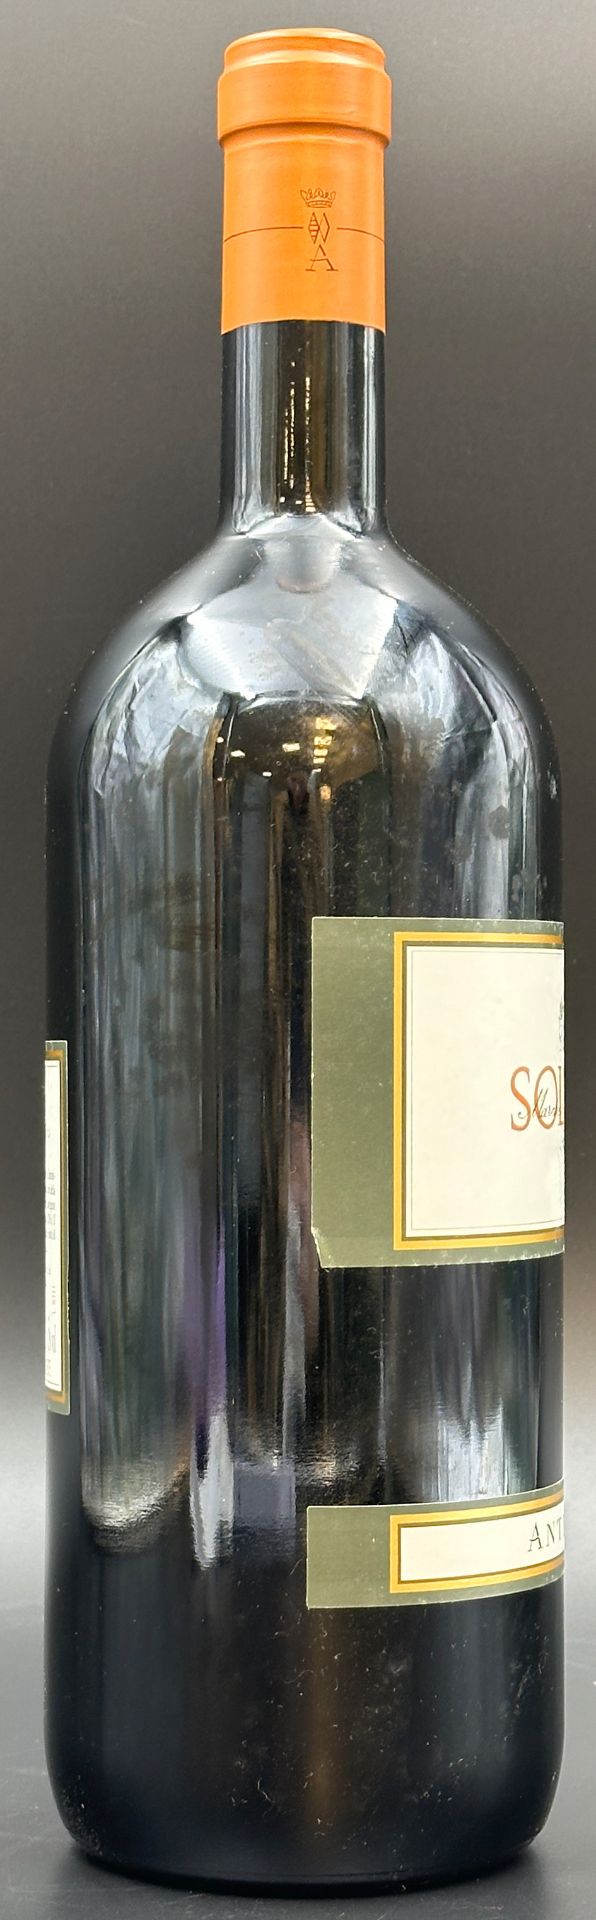 SOLAIA. Marchesi Antinori. 1 Magnum Flasche Rotwein. 1998. - Bild 5 aus 11